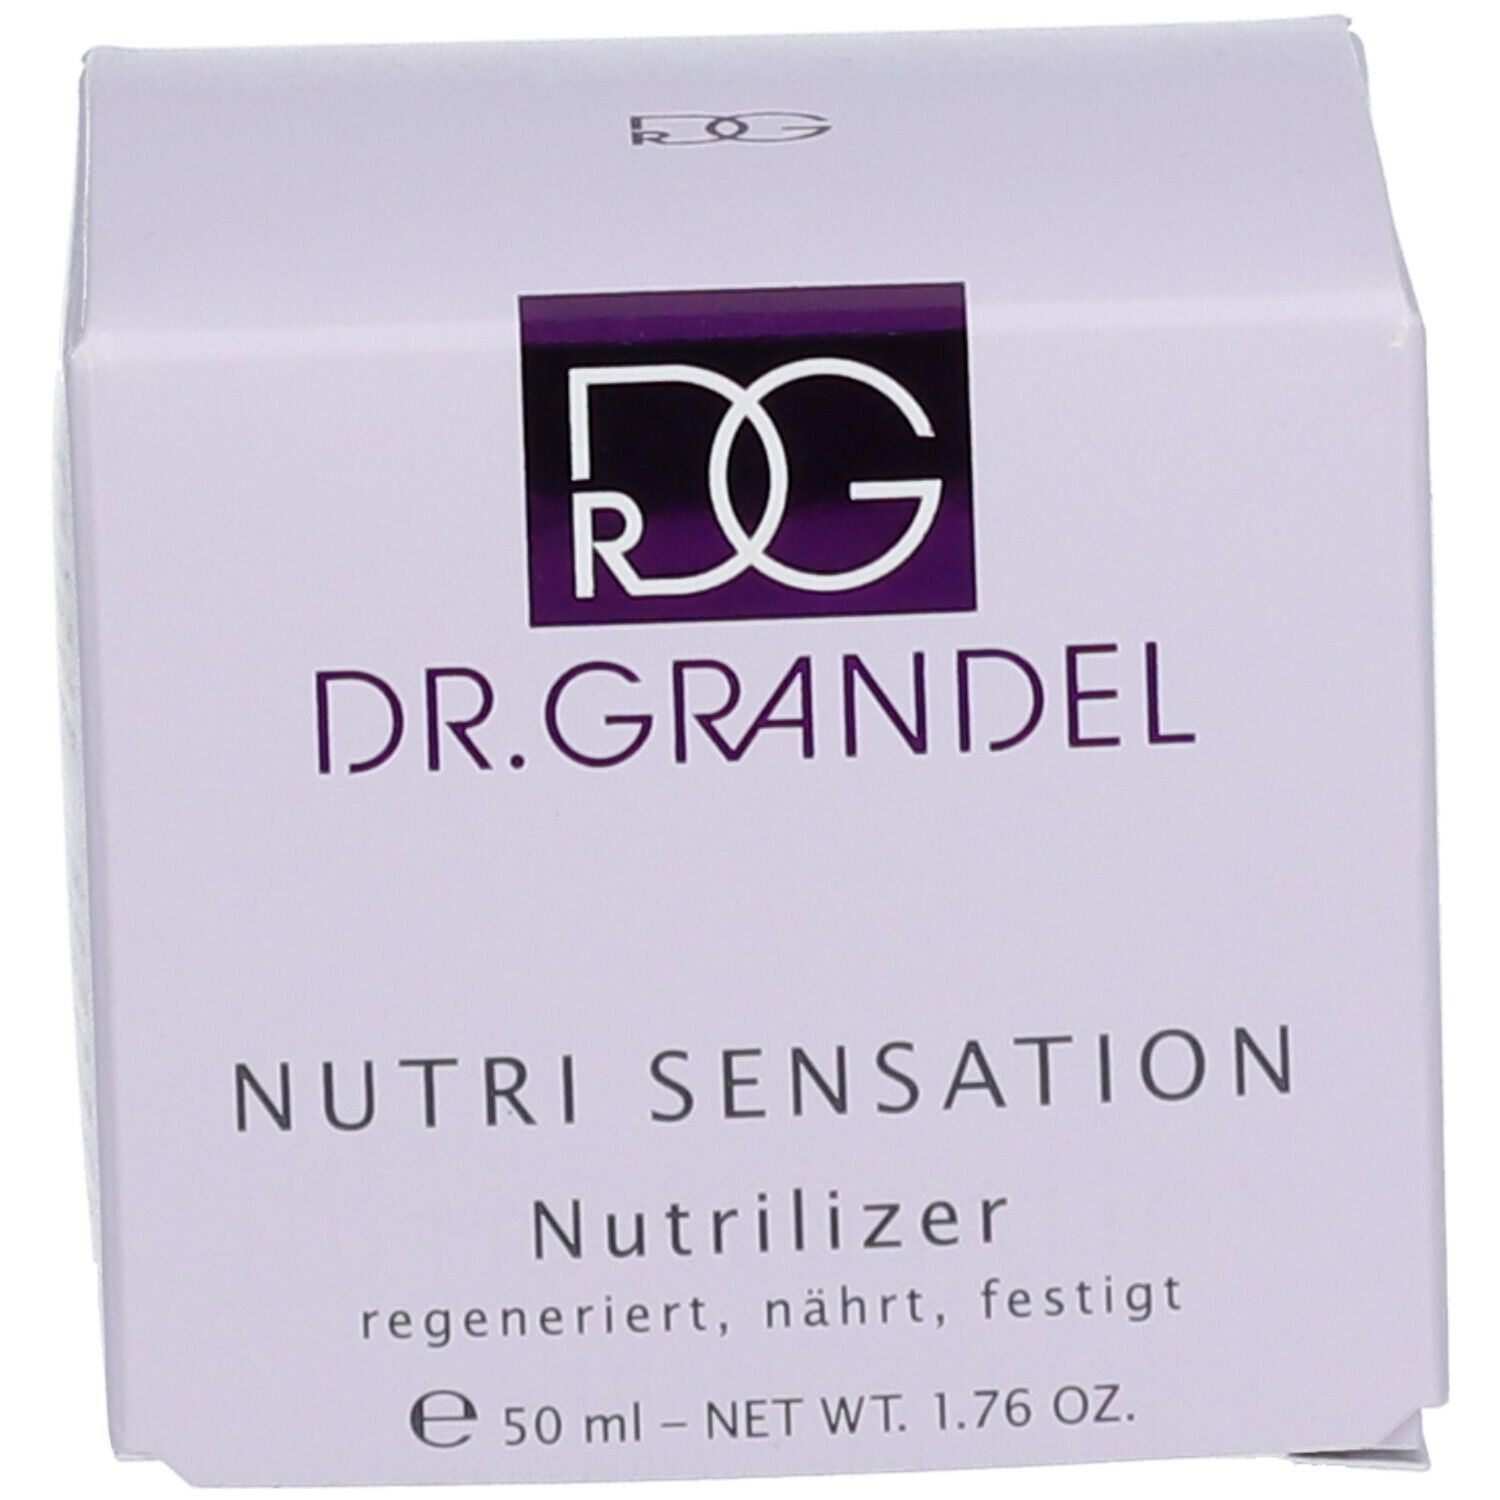 Dr. Grandel NUTRI SENSATION Nutrilizer